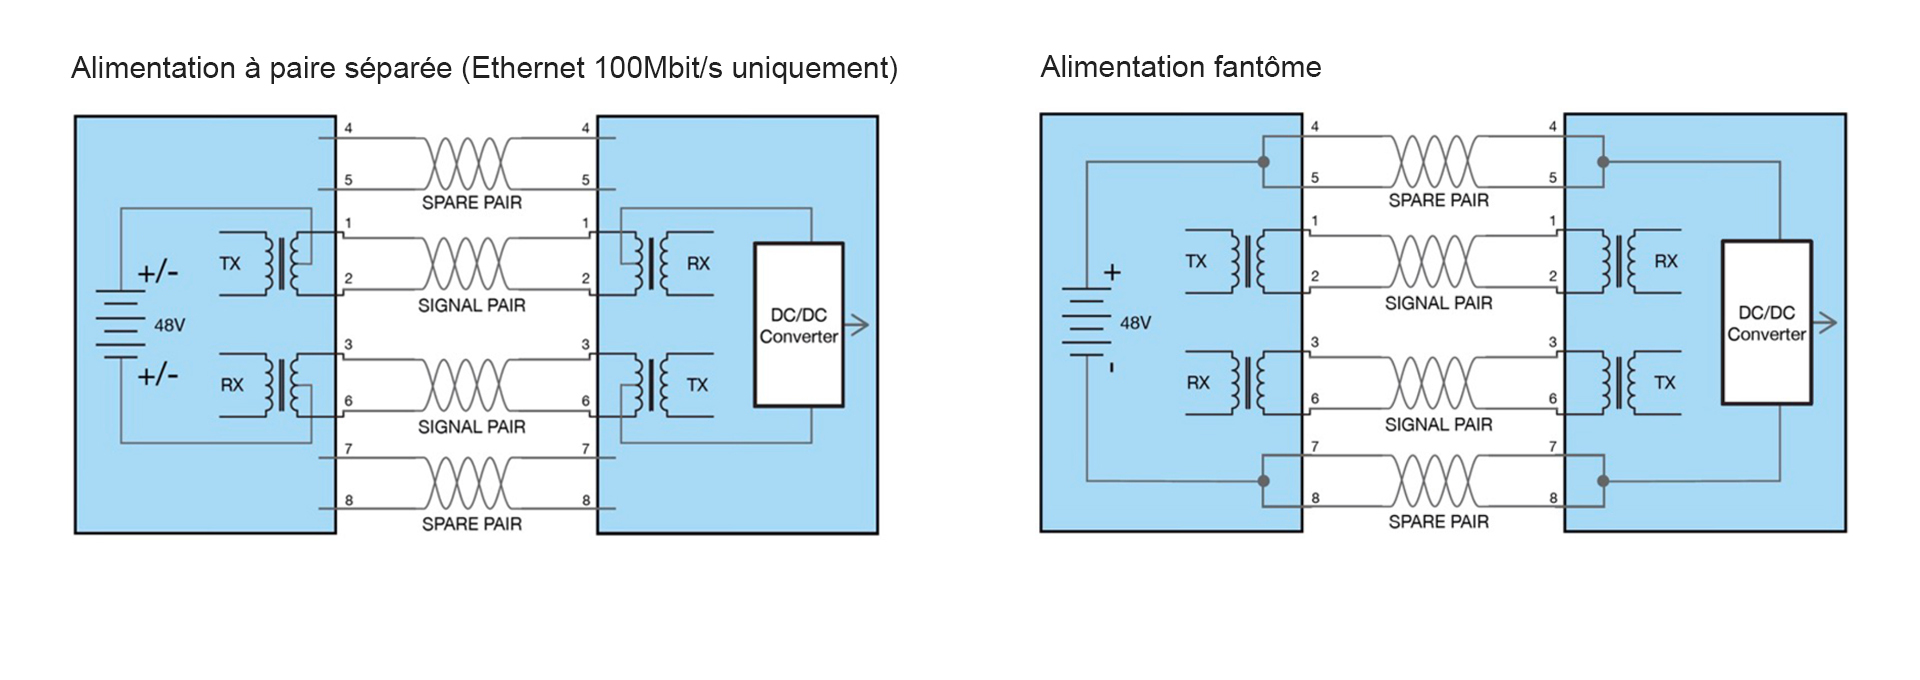 Alimentation à paire séparée (Ethernet 100Mbit/s uniquement) & Alimentation fantôme